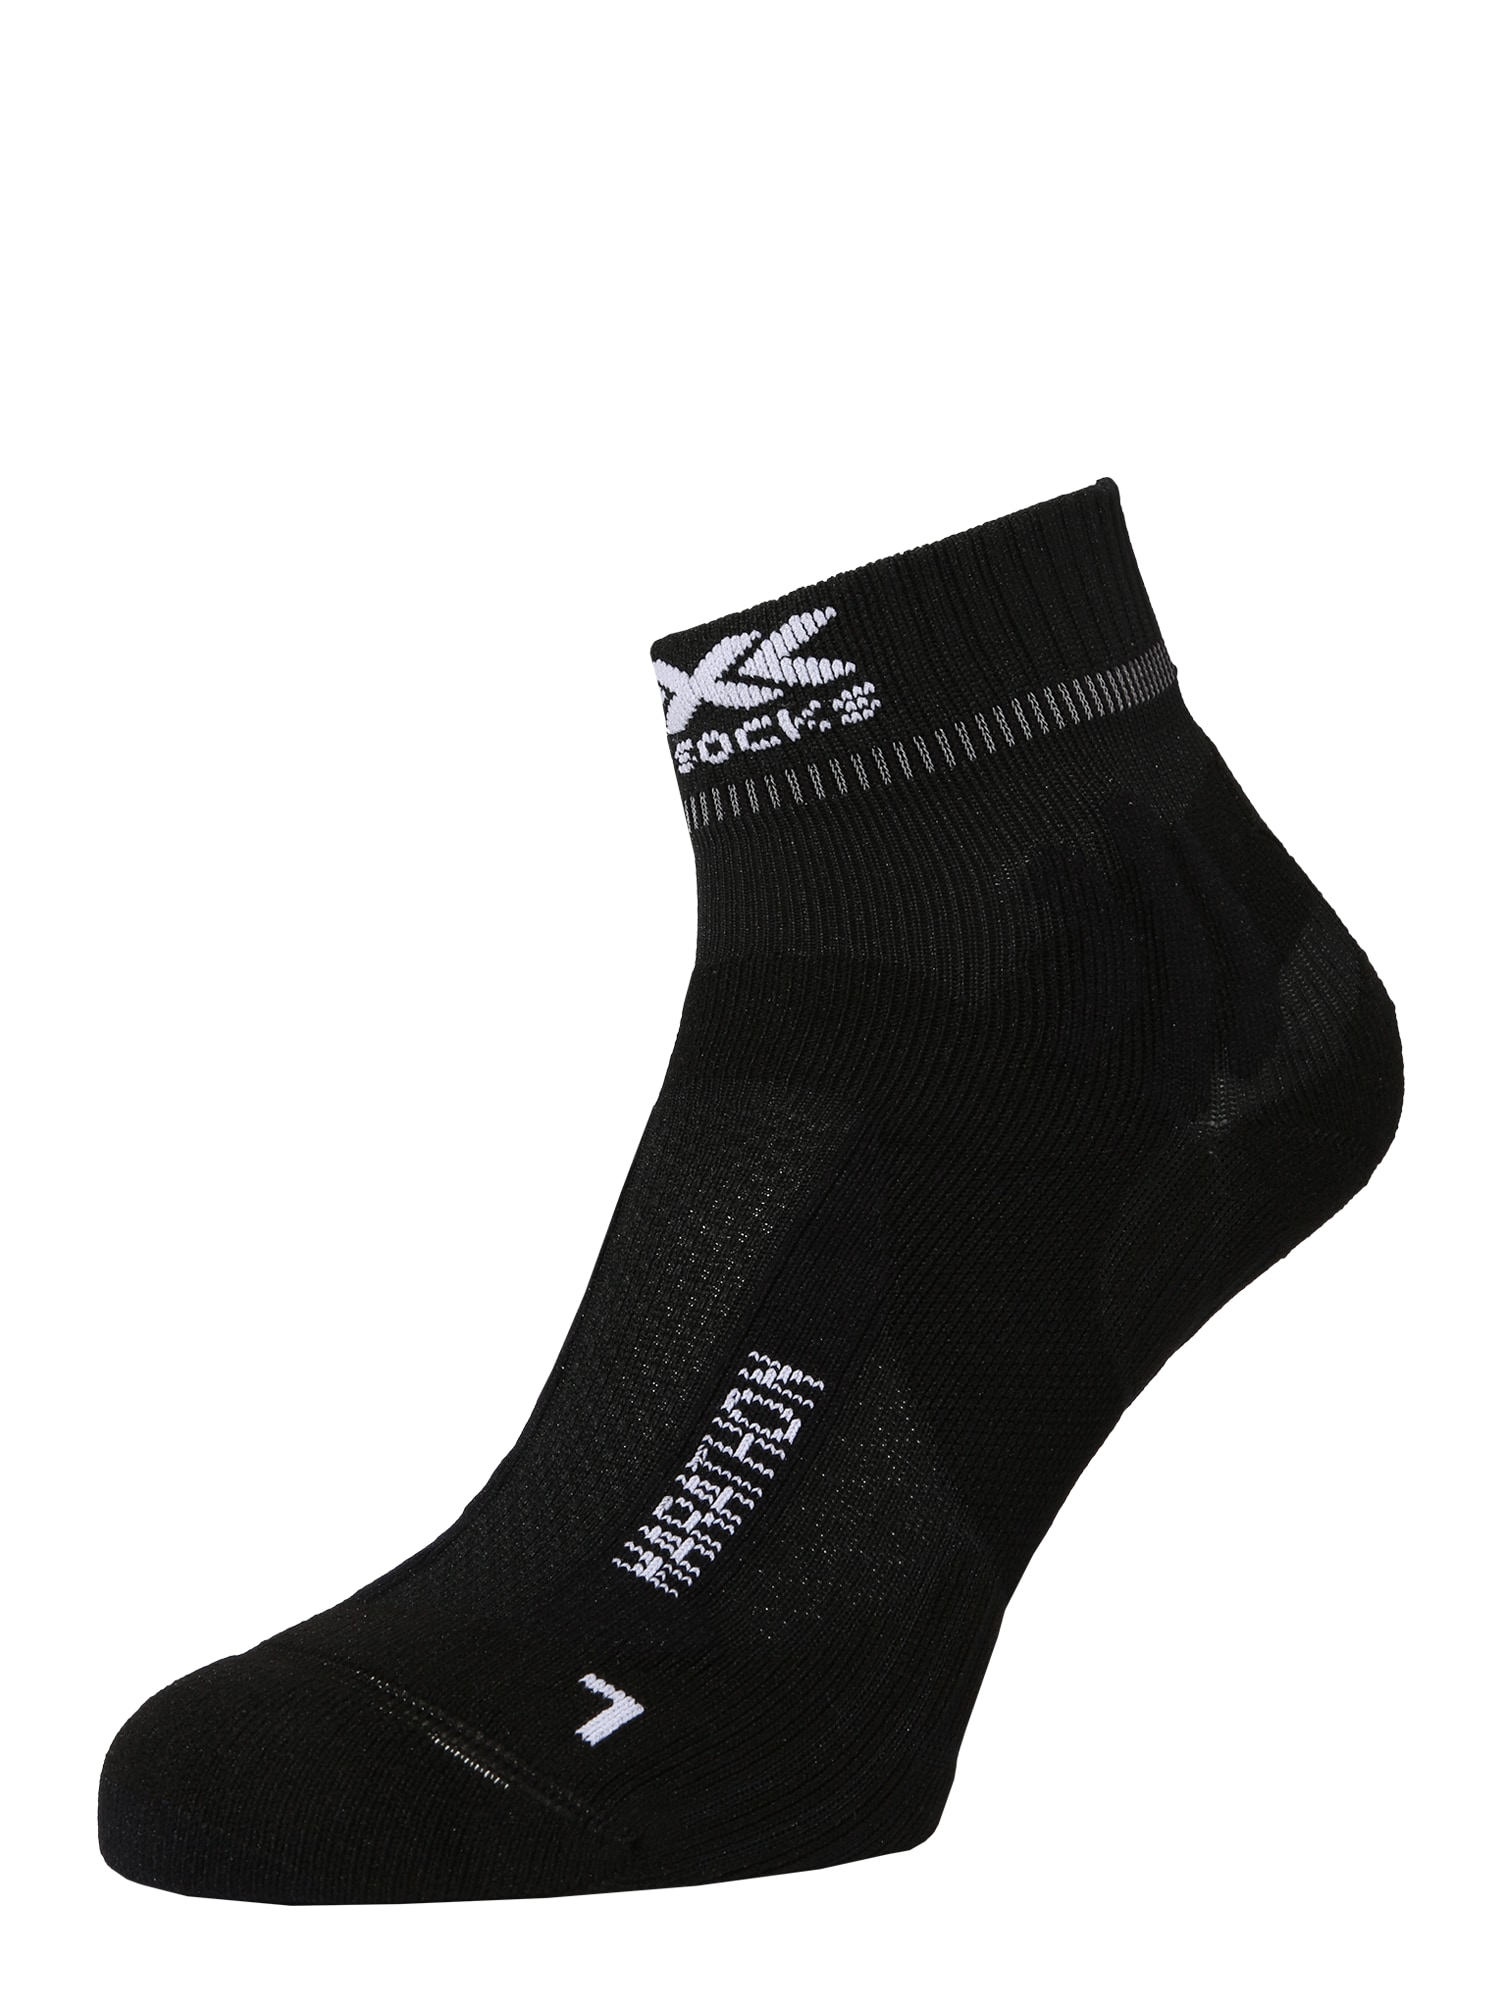 X-SOCKS Sportinės kojinės 'MARATHON' juoda / balta